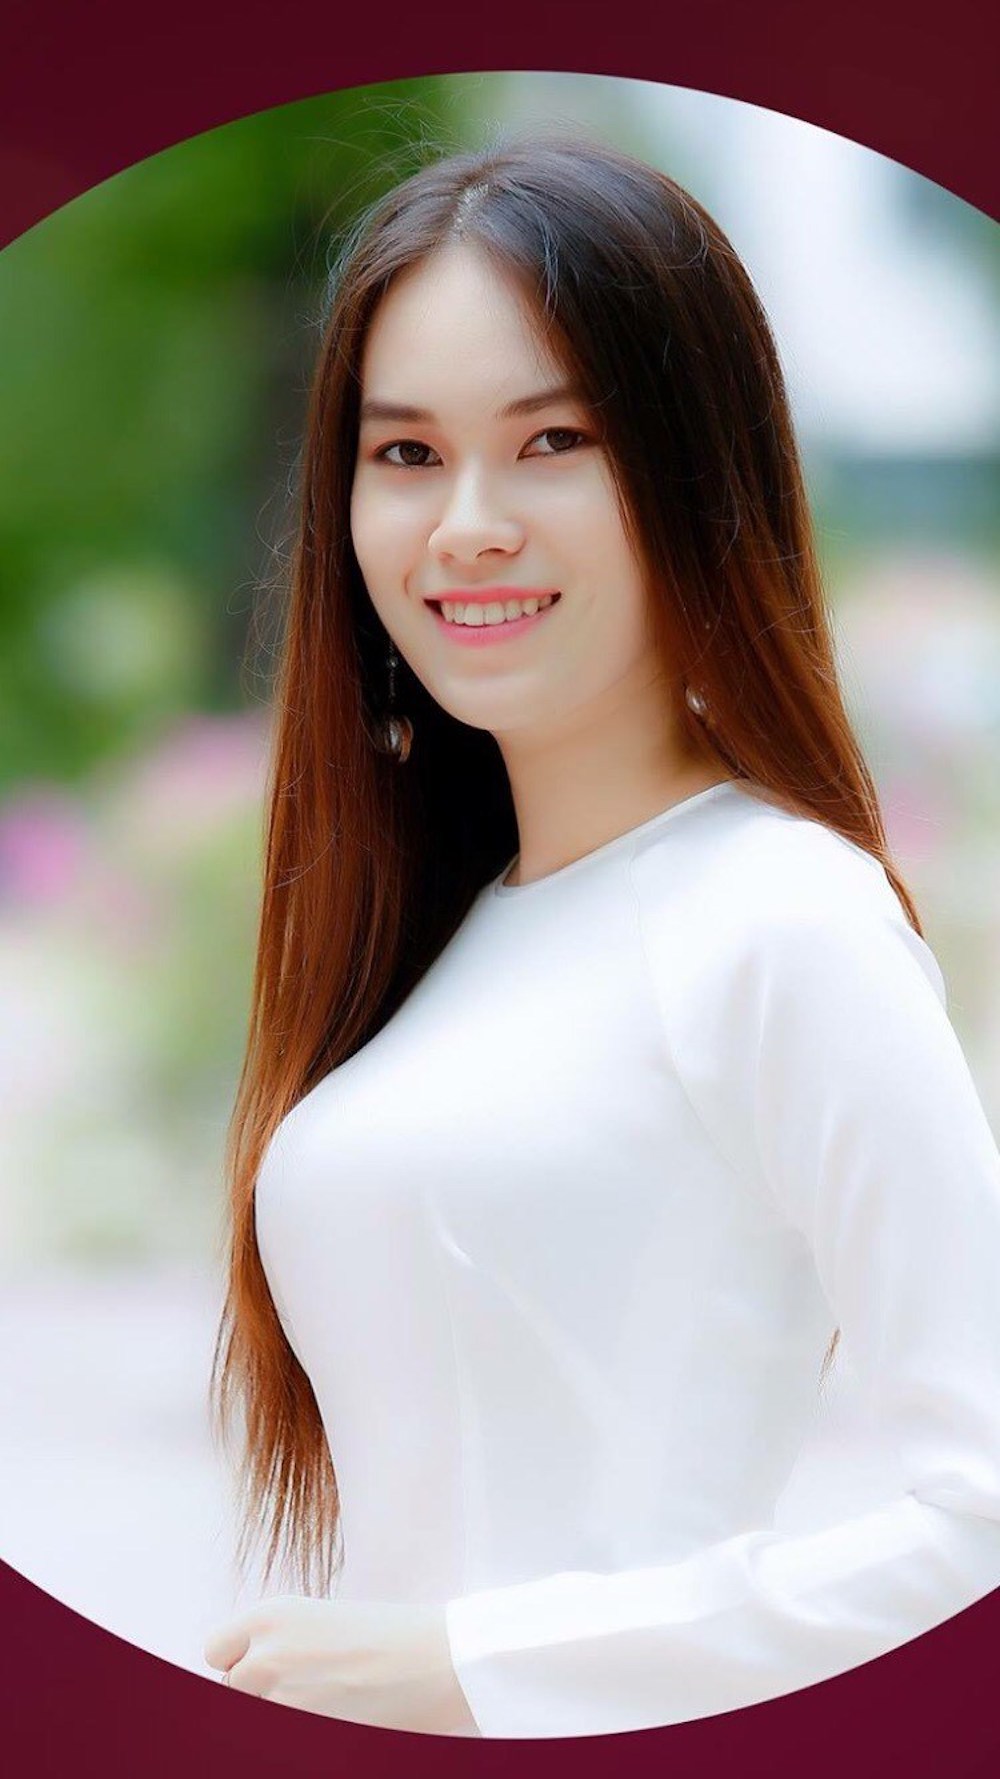 Hoa hau cac dan toc Viet Nam Nguyen Thi Truc Quynh 1 - Profile ấn tượng của top 30 thí sinh vòng Chung khảo phía Nam – Hoa hậu các Dân tộc Việt Nam